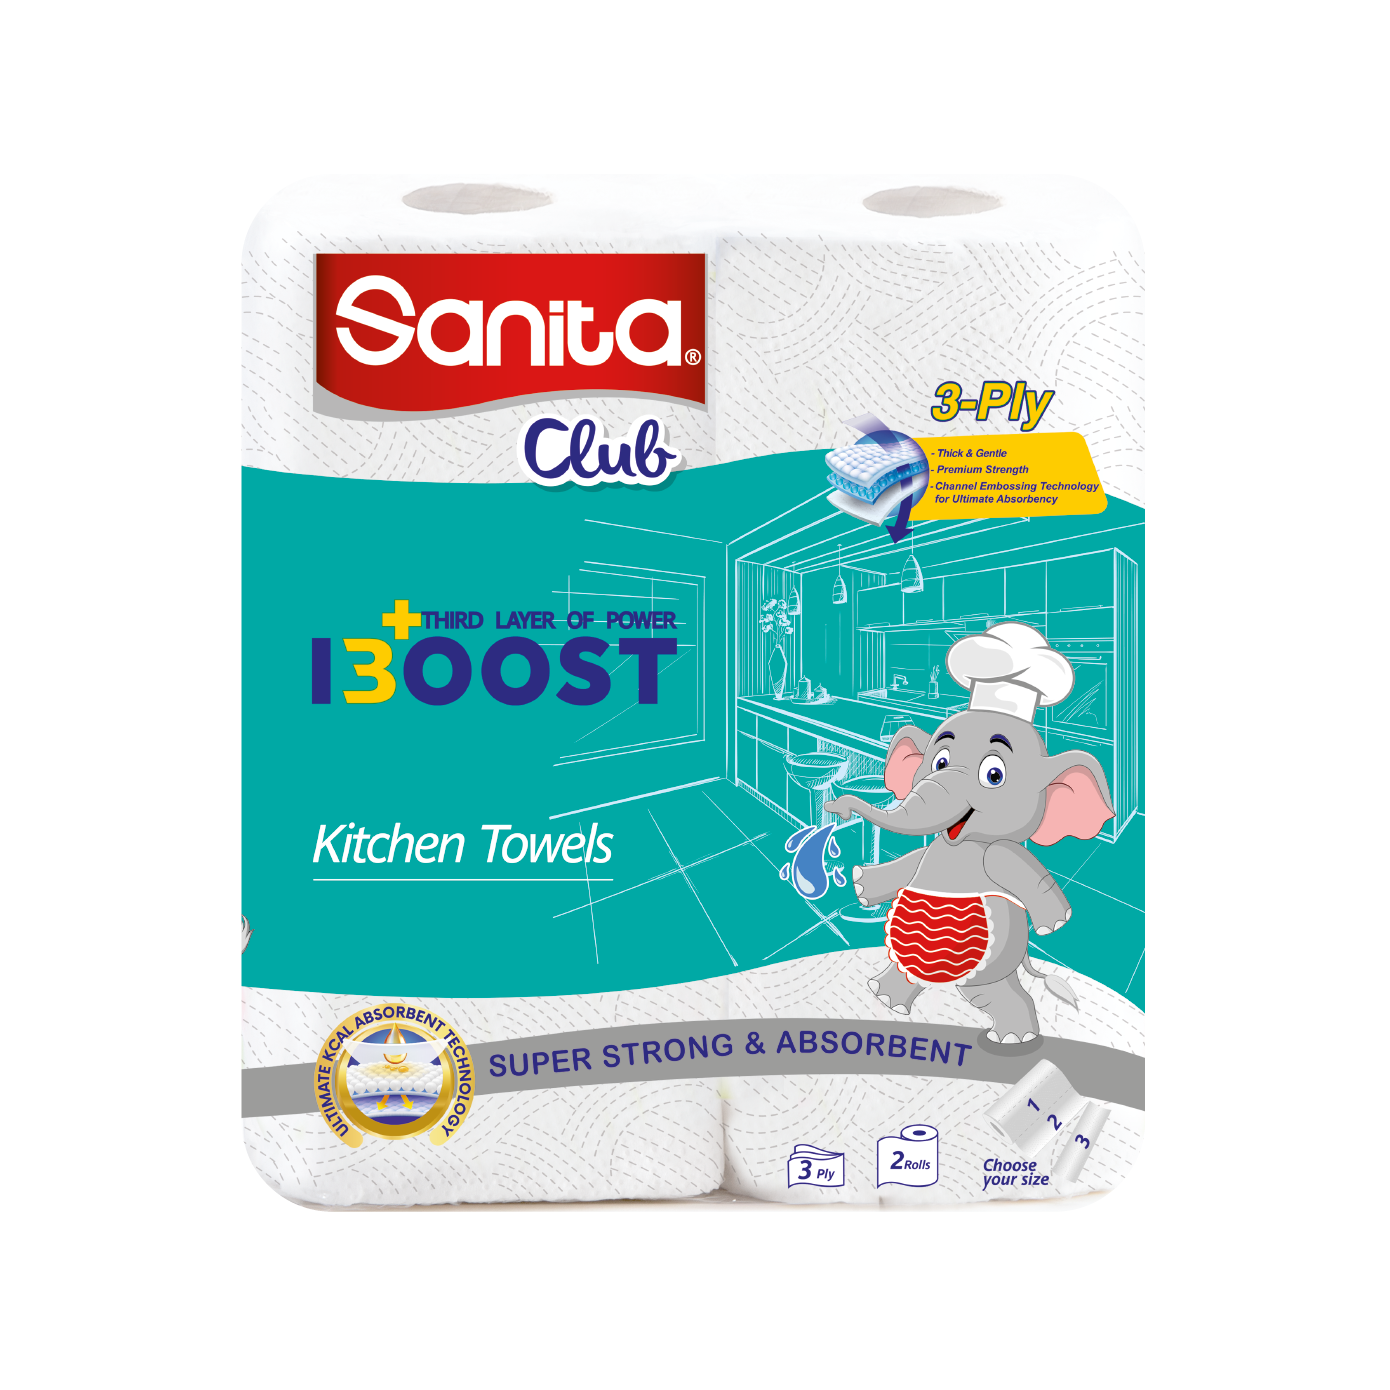 Sanita Club Kitchen Boost 2 Rolls